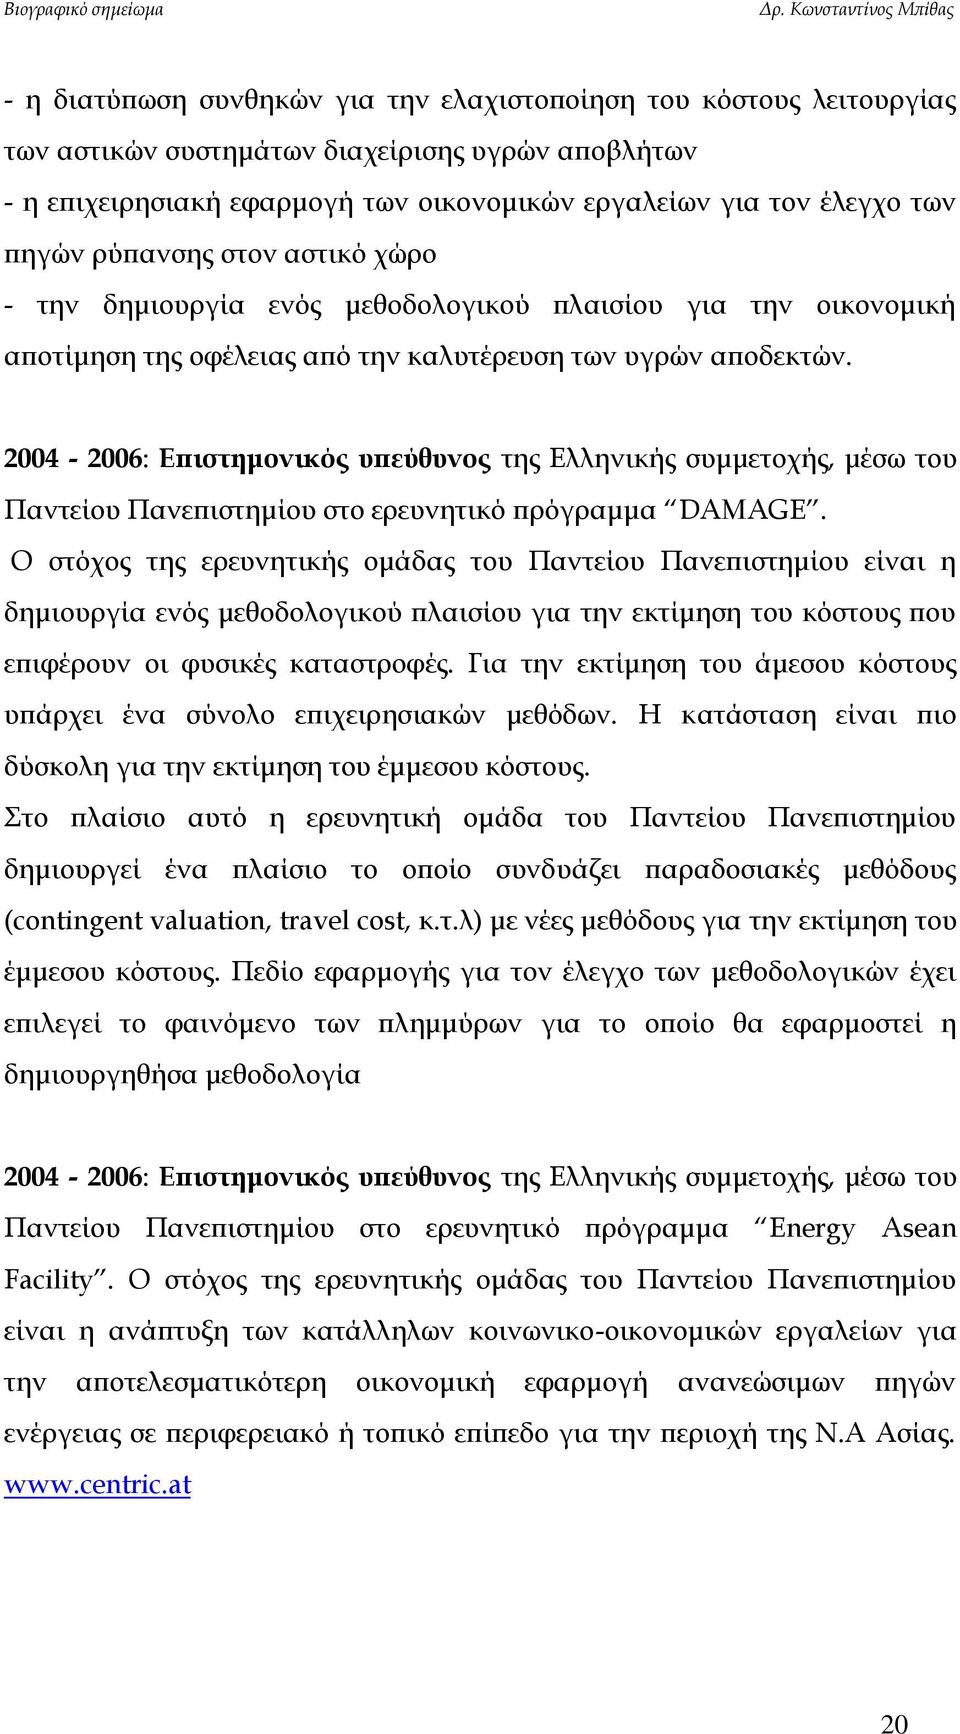 2004-2006: Επιστημονικός υπεύθυνος της Ελληνικής συμμετοχής, μέσω του Παντείου Πανεπιστημίου στο ερευνητικό πρόγραμμα DAMAGE.